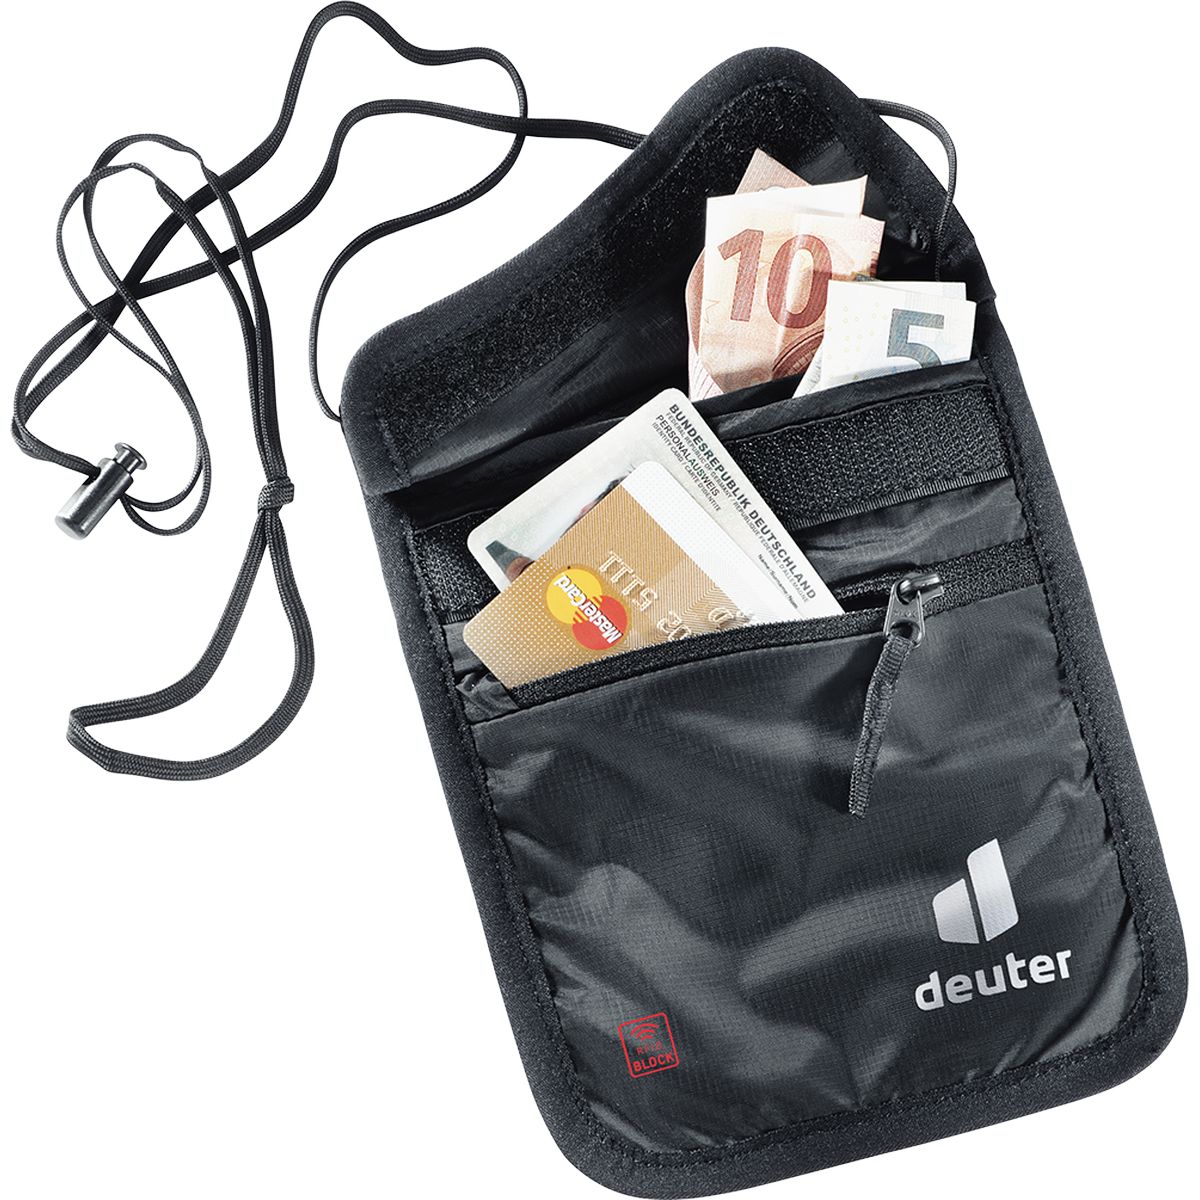 Deuter Security Wallet II RFID BLOCK Brustbeutel_0